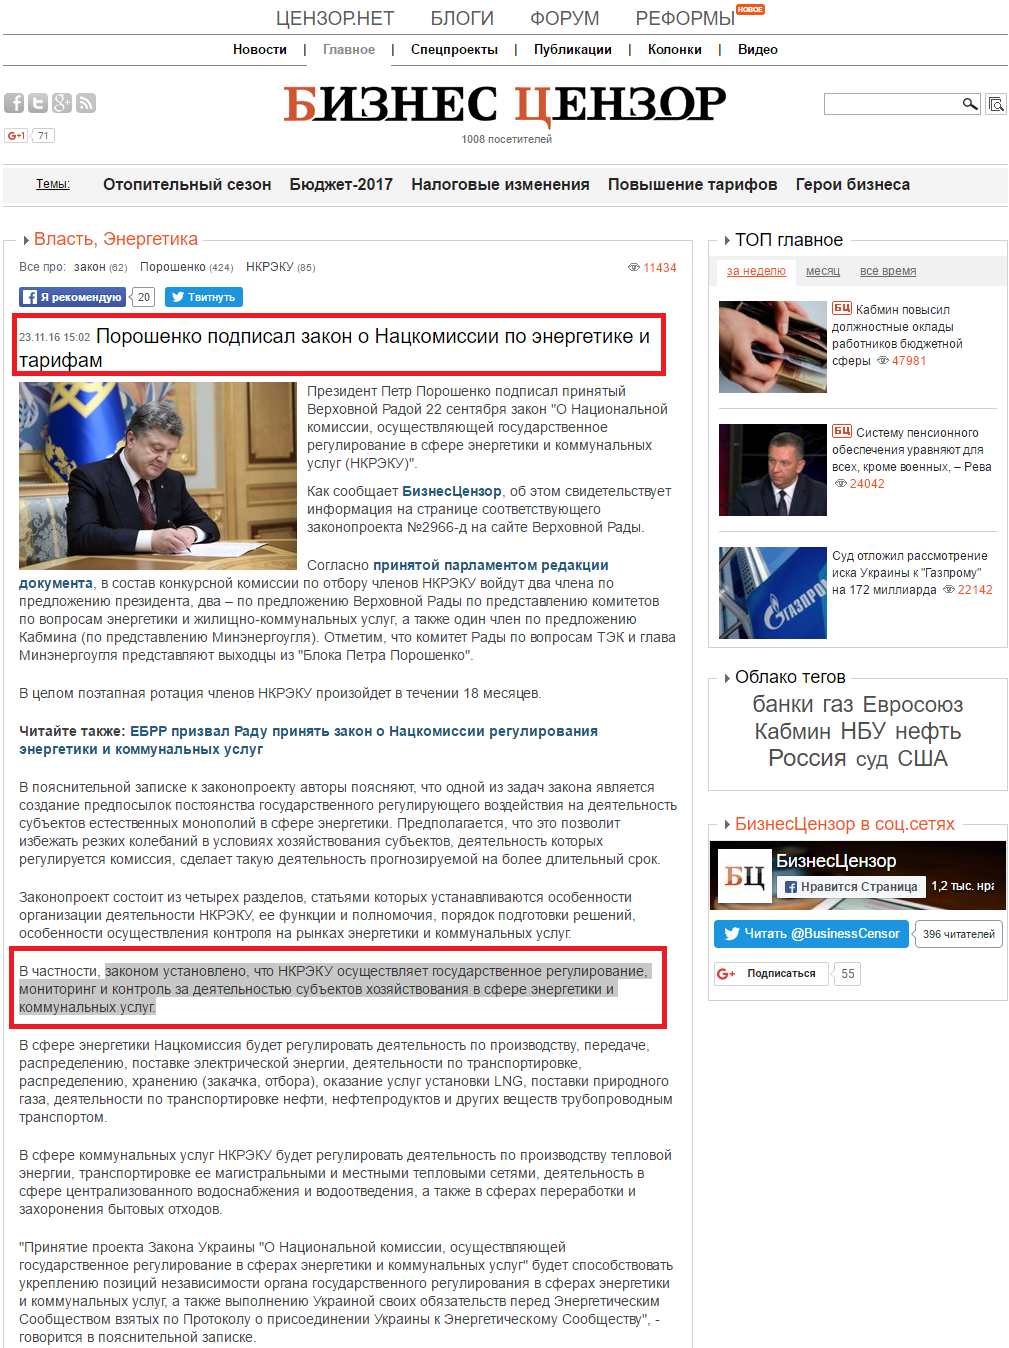 http://biz.censor.net.ua/events/3015786/poroshenko_podpisal_zakon_o_natskomissii_po_energetike_i_tarifam